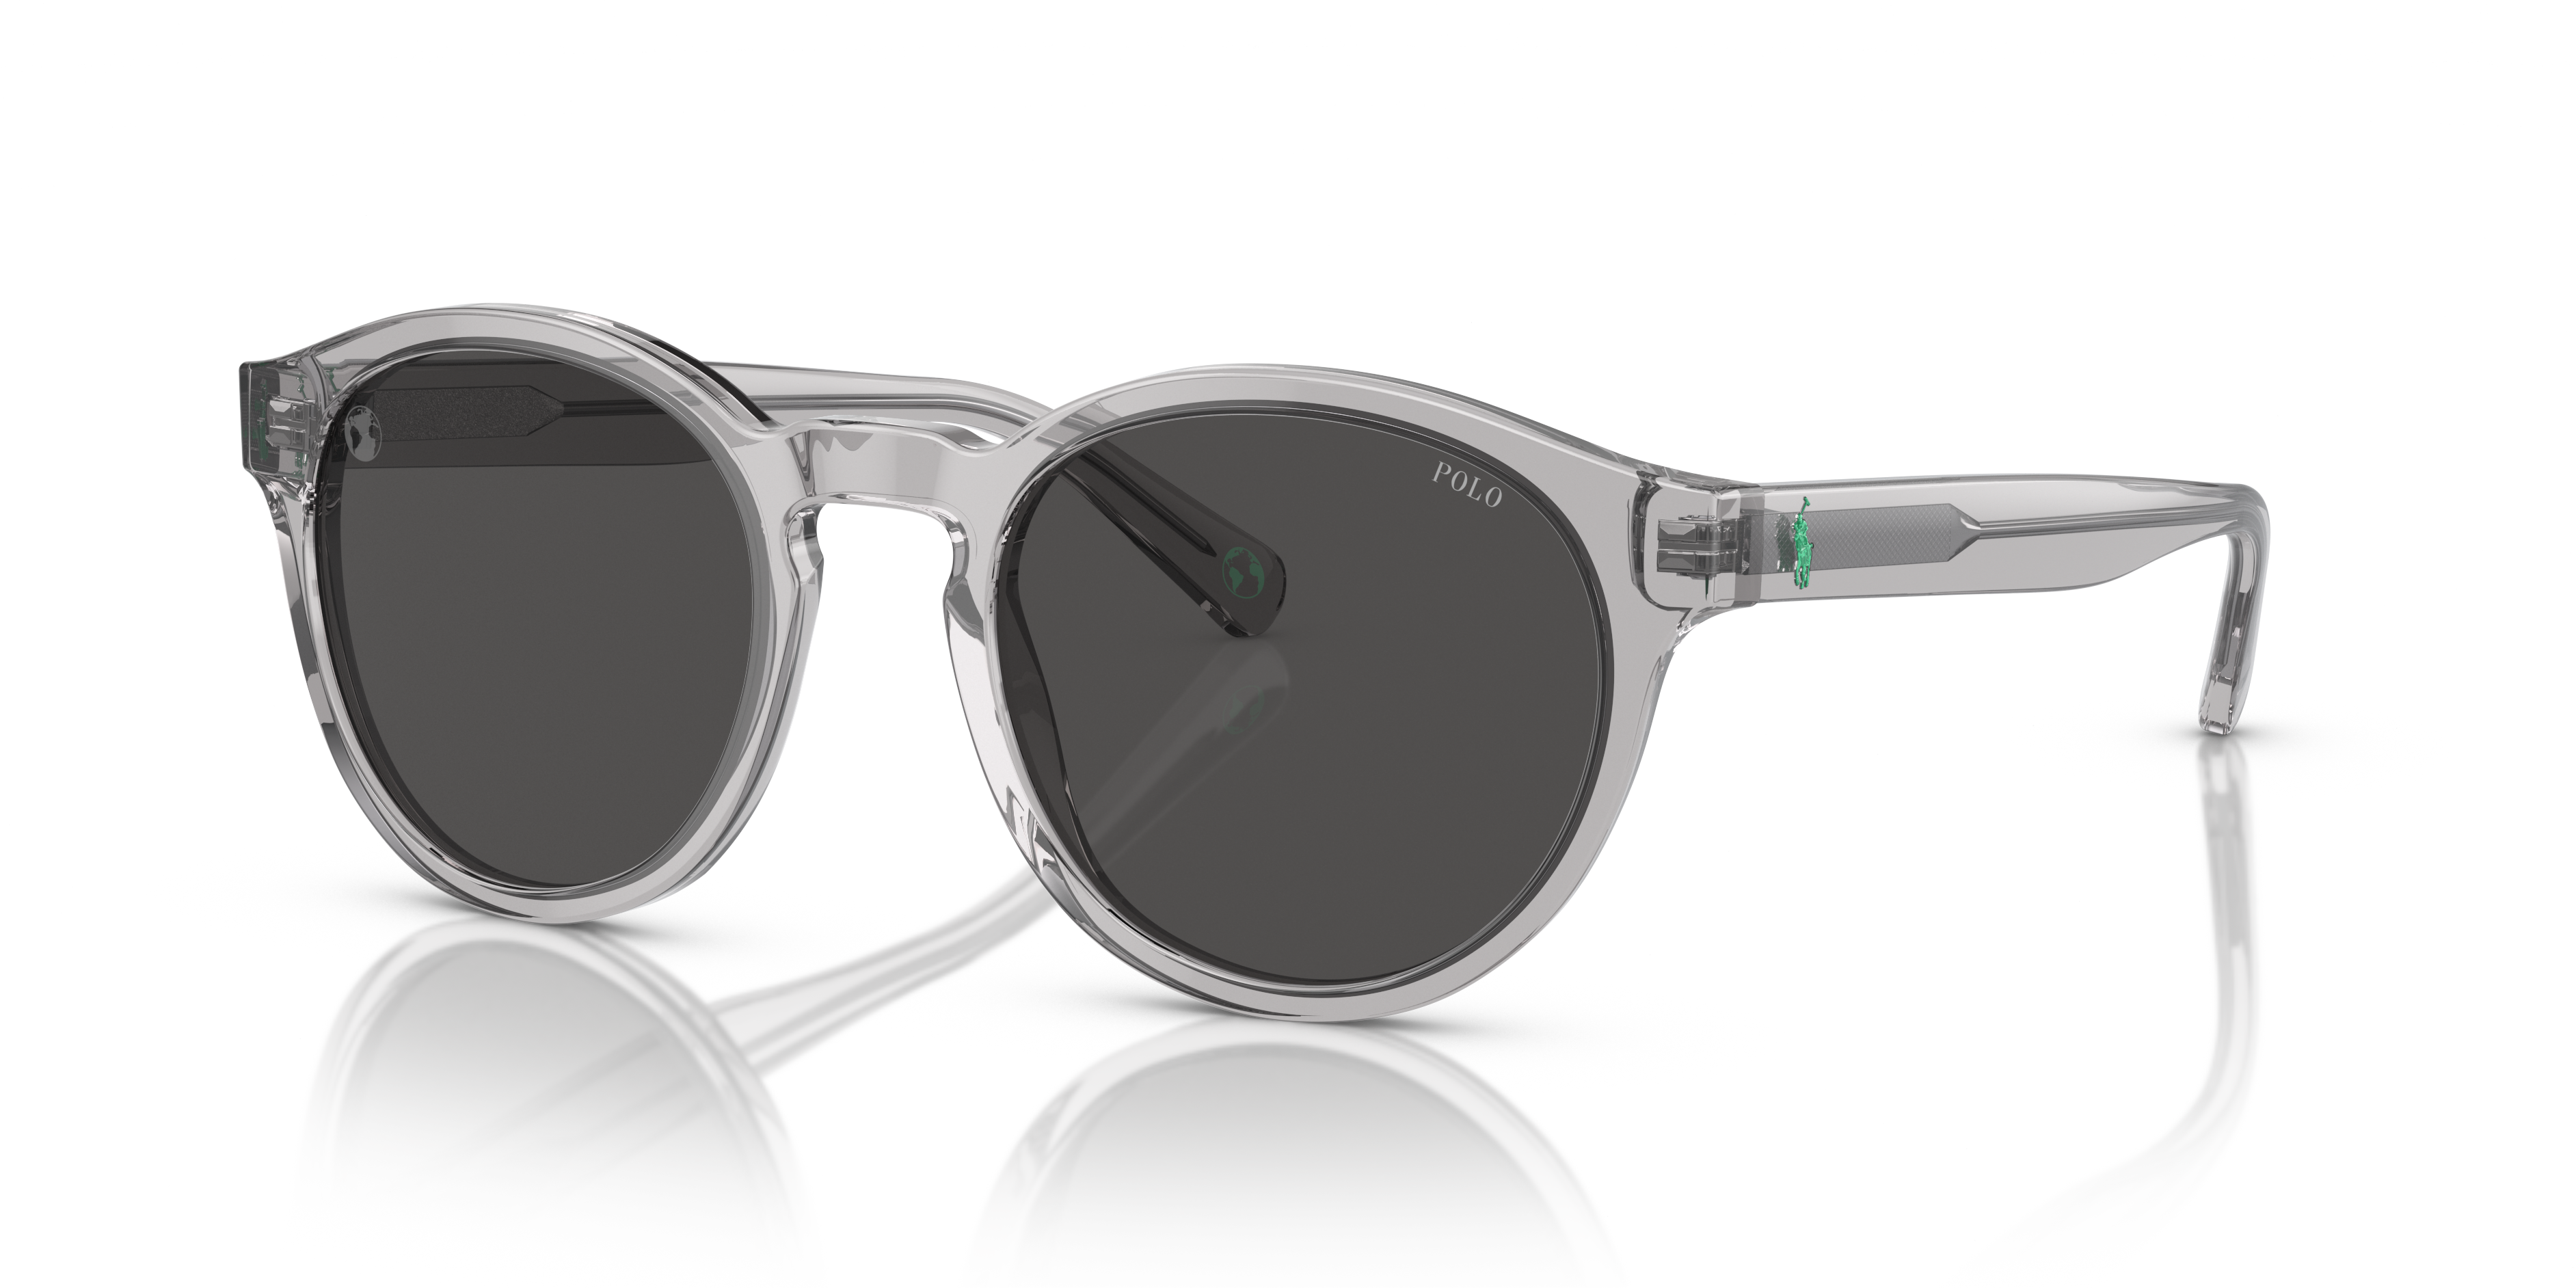 Men's Sunglasses & Glasses in Retro & Modern Styles | Ralph Lauren